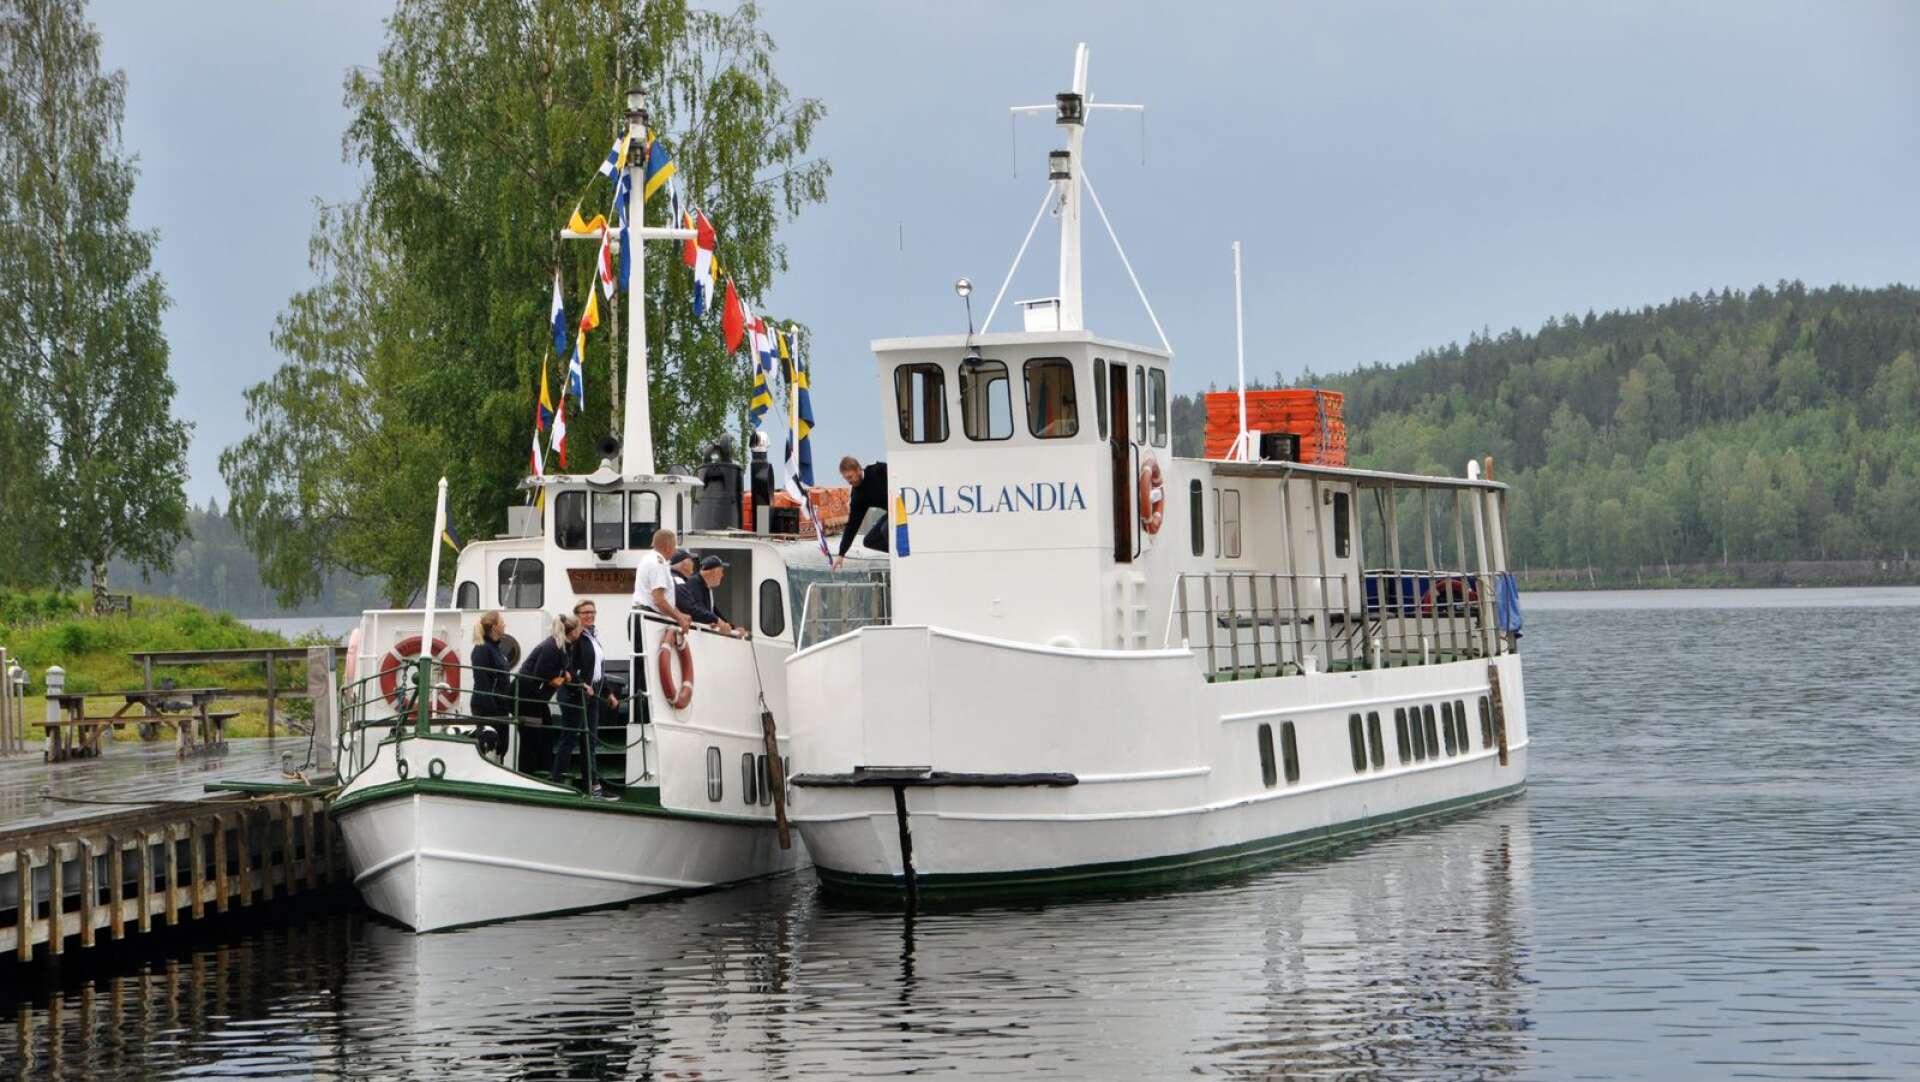 Att åka båt längs Dalslands kanal är en populär aktivitet för både turister och dalslänningar. Här passagerarbåten Dalslandia.